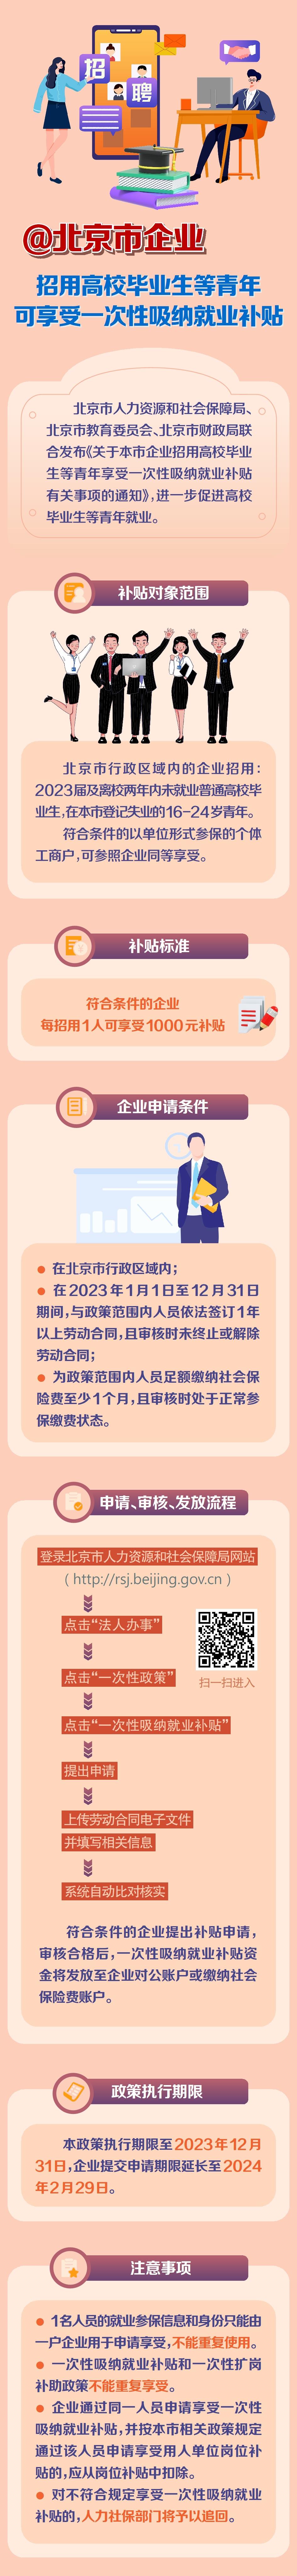 北京企业招用高校毕业生等三类青年群体可享受一次性吸纳就业补贴